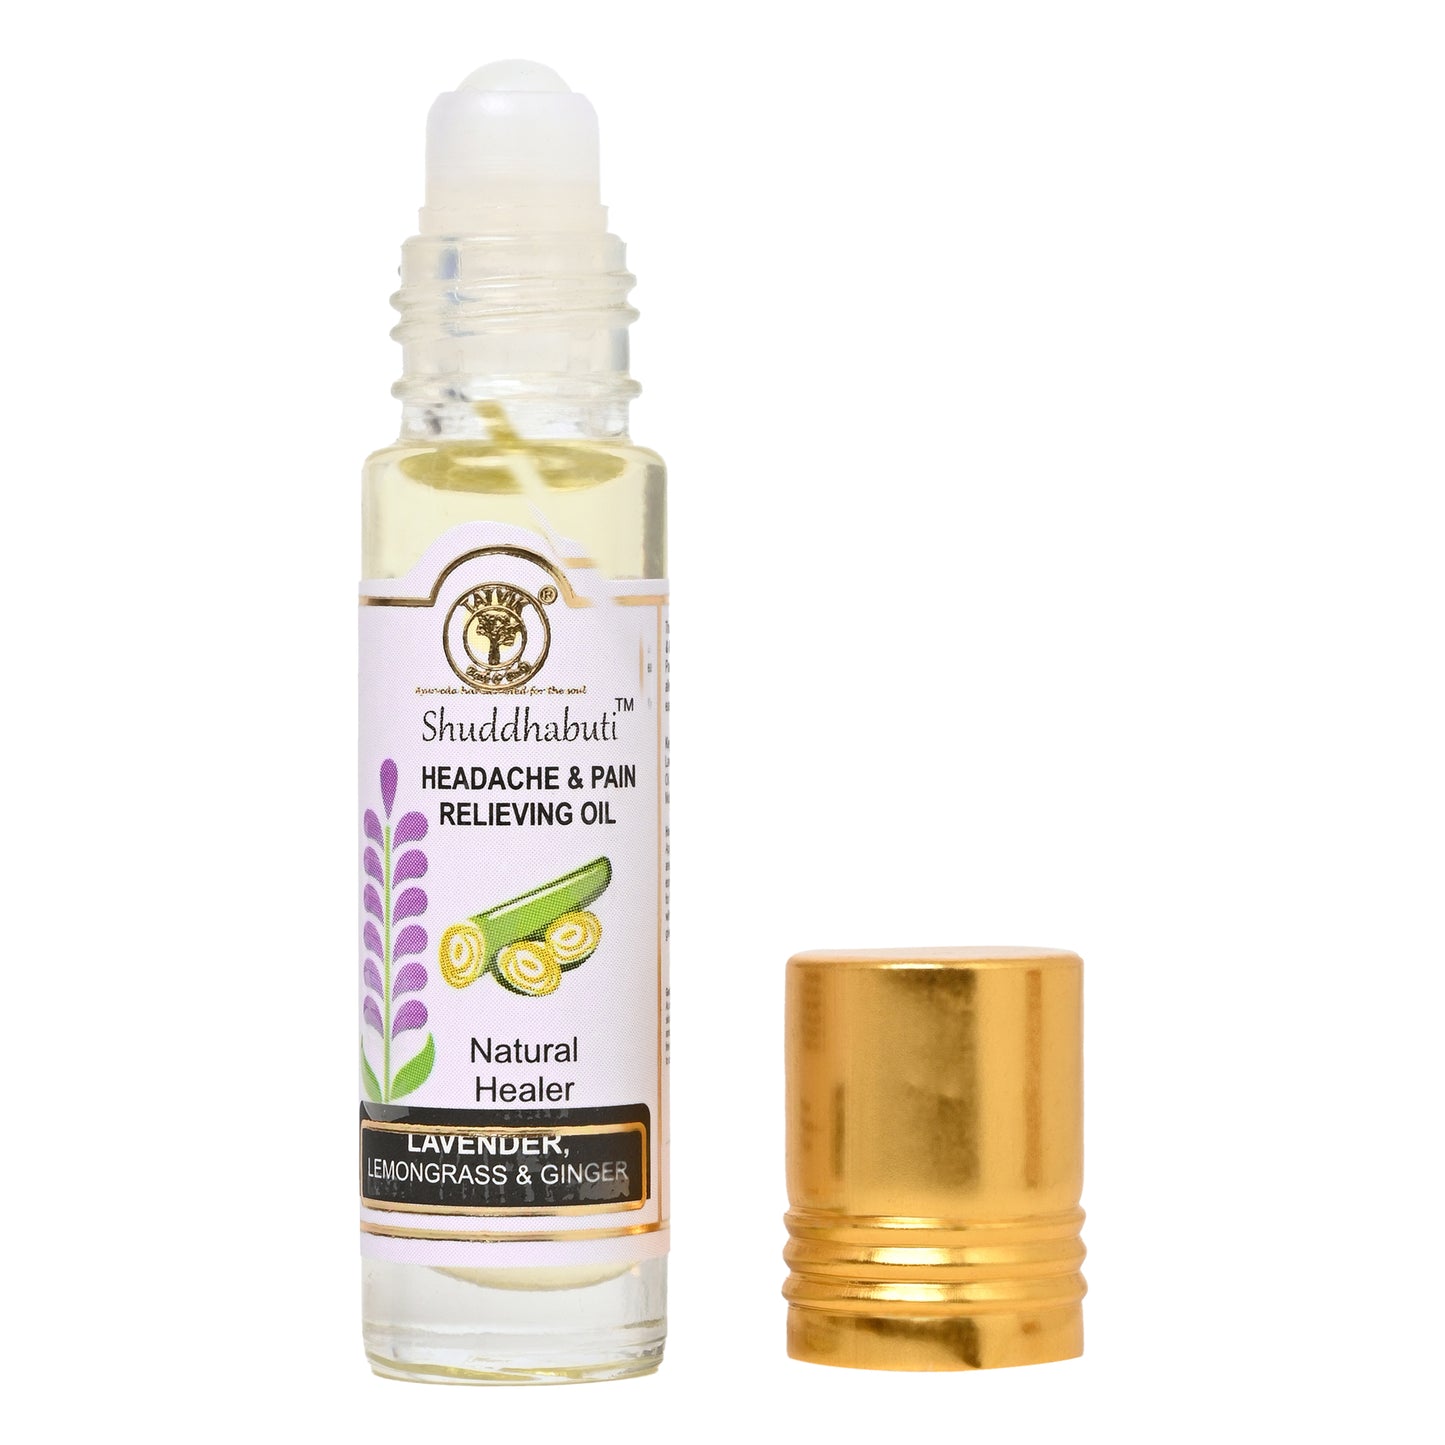 Shuddhabuti Lavender, Lemongrass & Ginger - Headache & Pain Relieving Oil